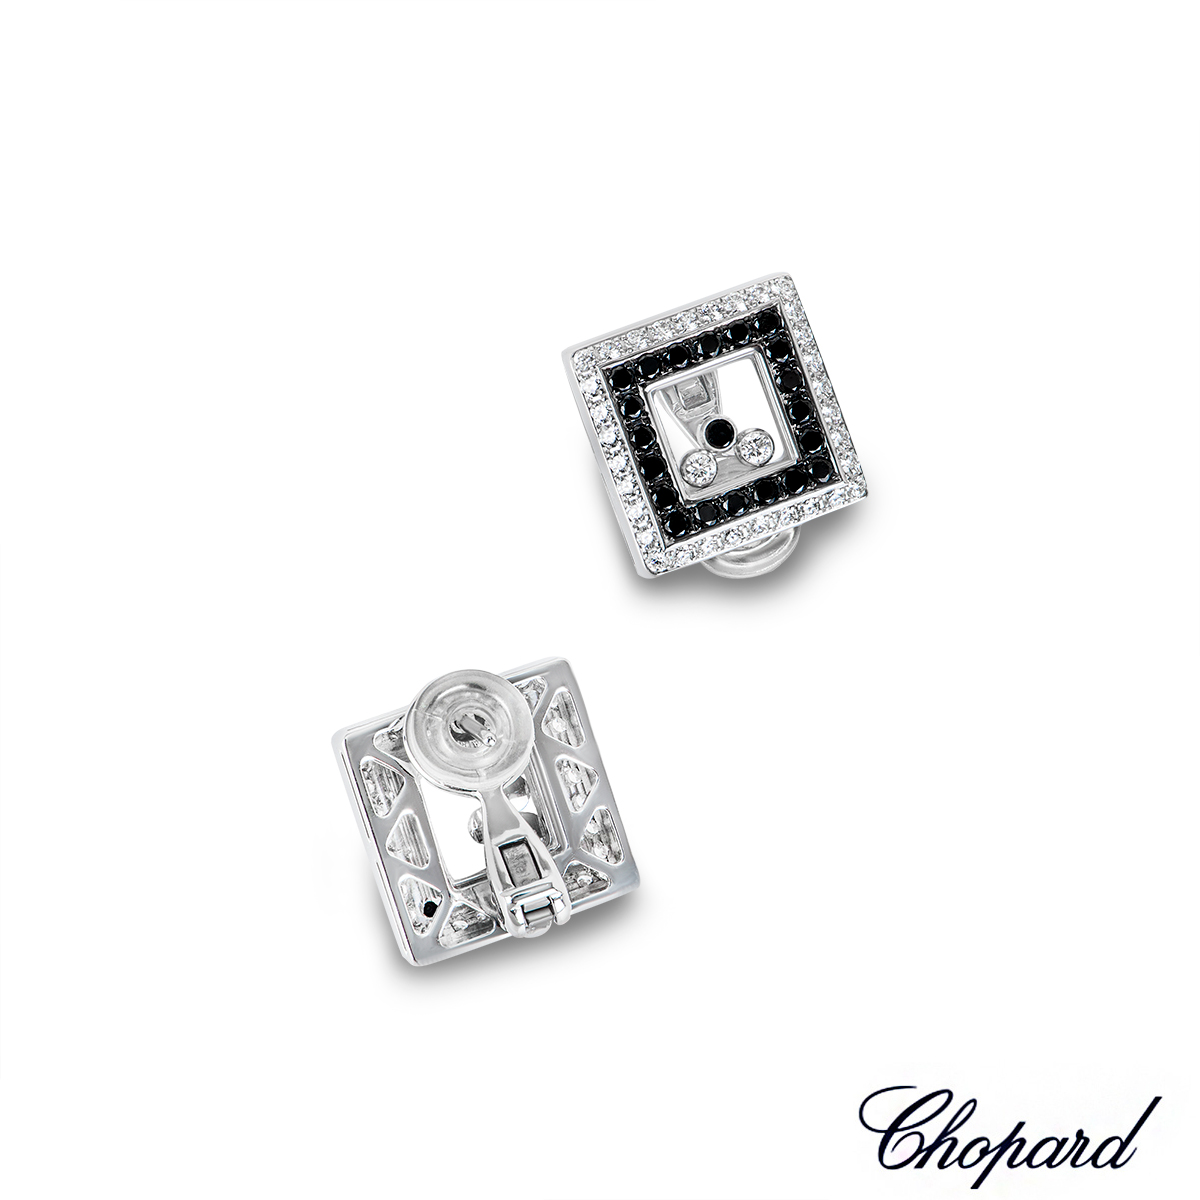 Chopard White Gold Happy Diamonds Earrings 84/3684-1001